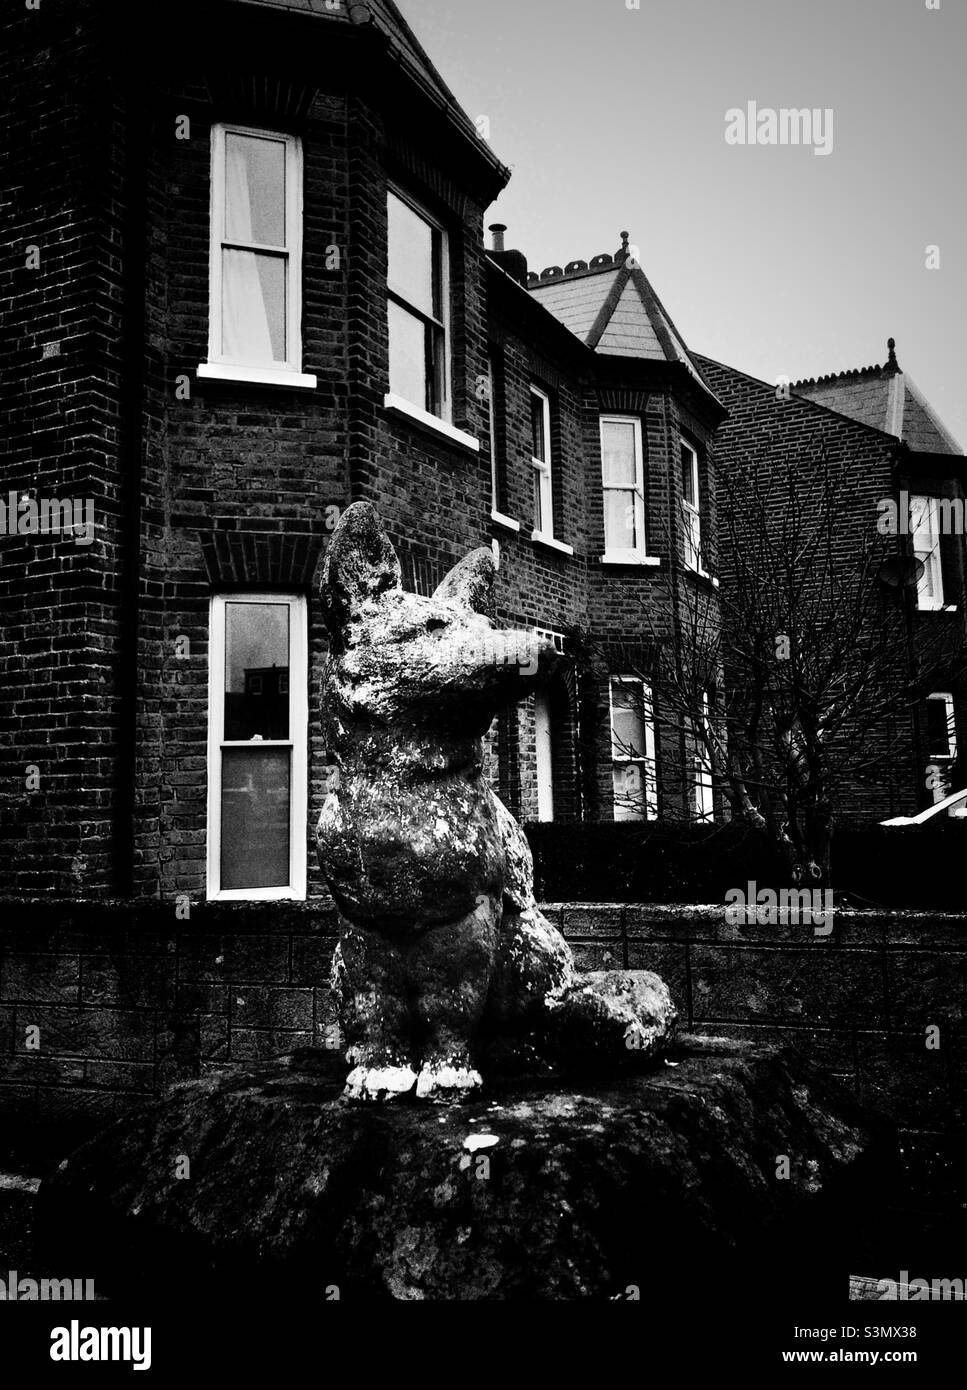 Figurine d'un renard à l'extérieur d'une maison en Angleterre Banque D'Images